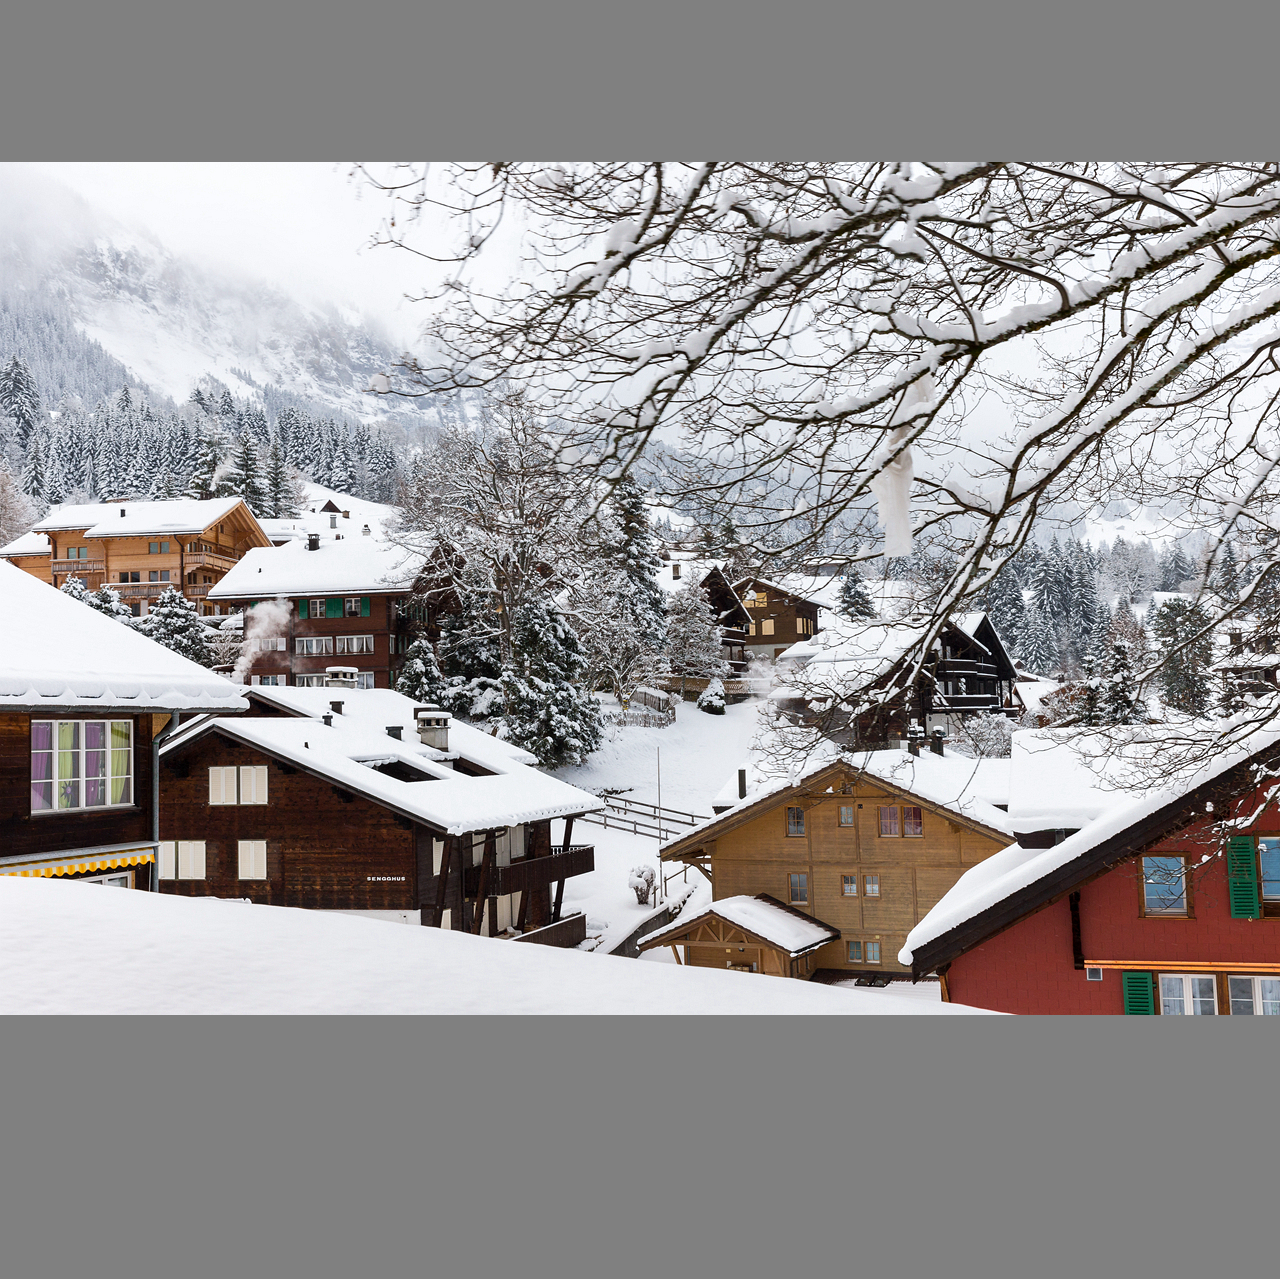 冬天瑞士雪景最美小镇图片